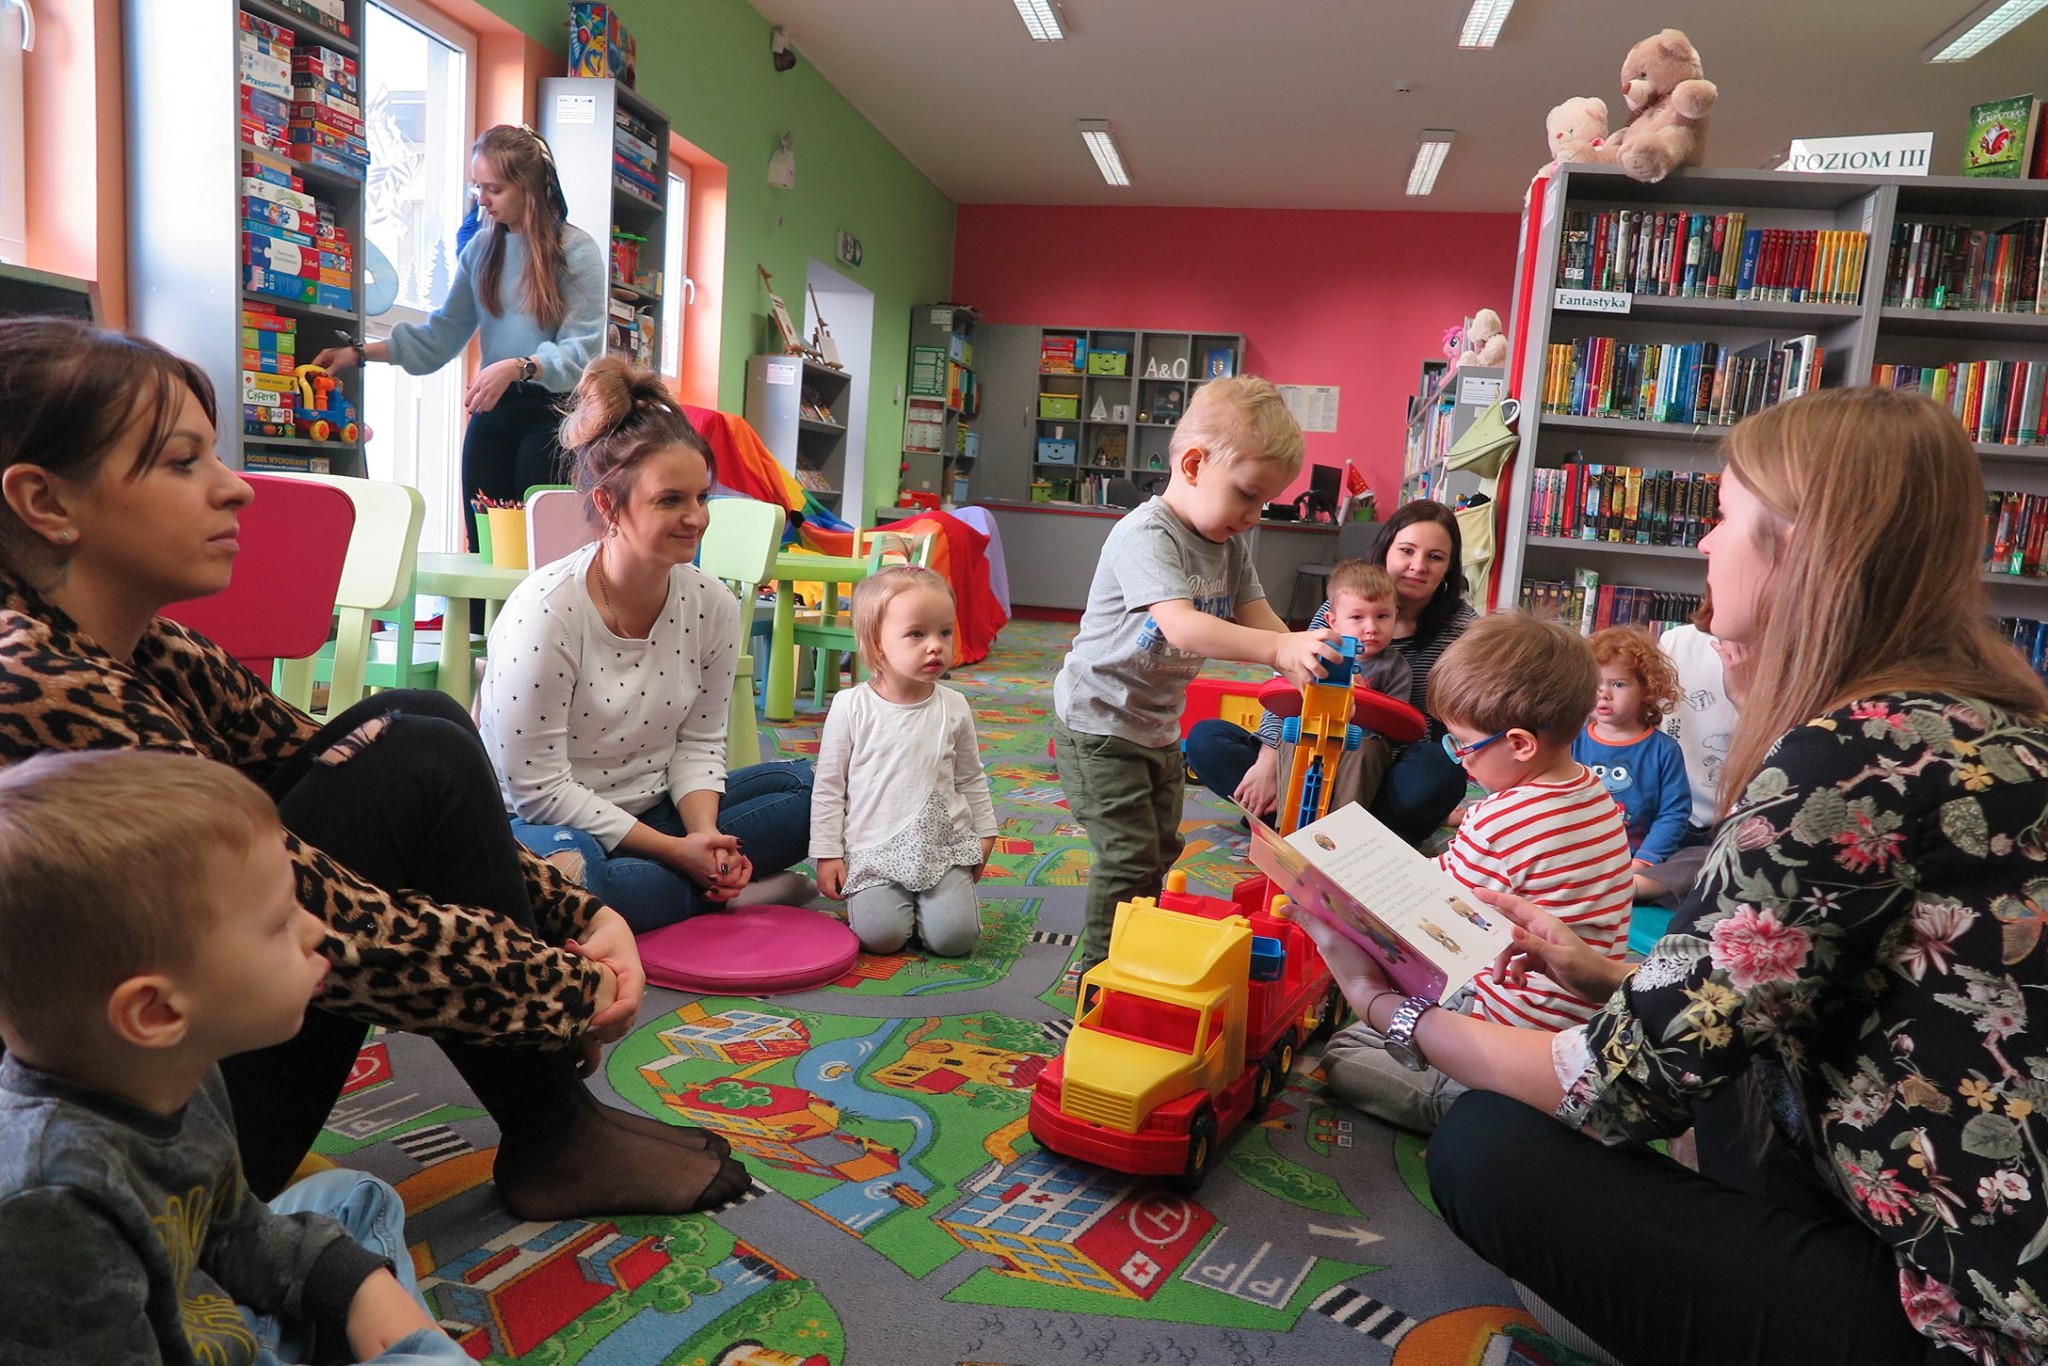 Wnętrze biblioteki, (Klub Malucha) zajęcia prowadzi bibliotekarka Aleksandra Cybulska na temat zbliżającego się święta (Dzień babci i dziadka) , dzieci uważnie słuchaja wraz z rodzicami.